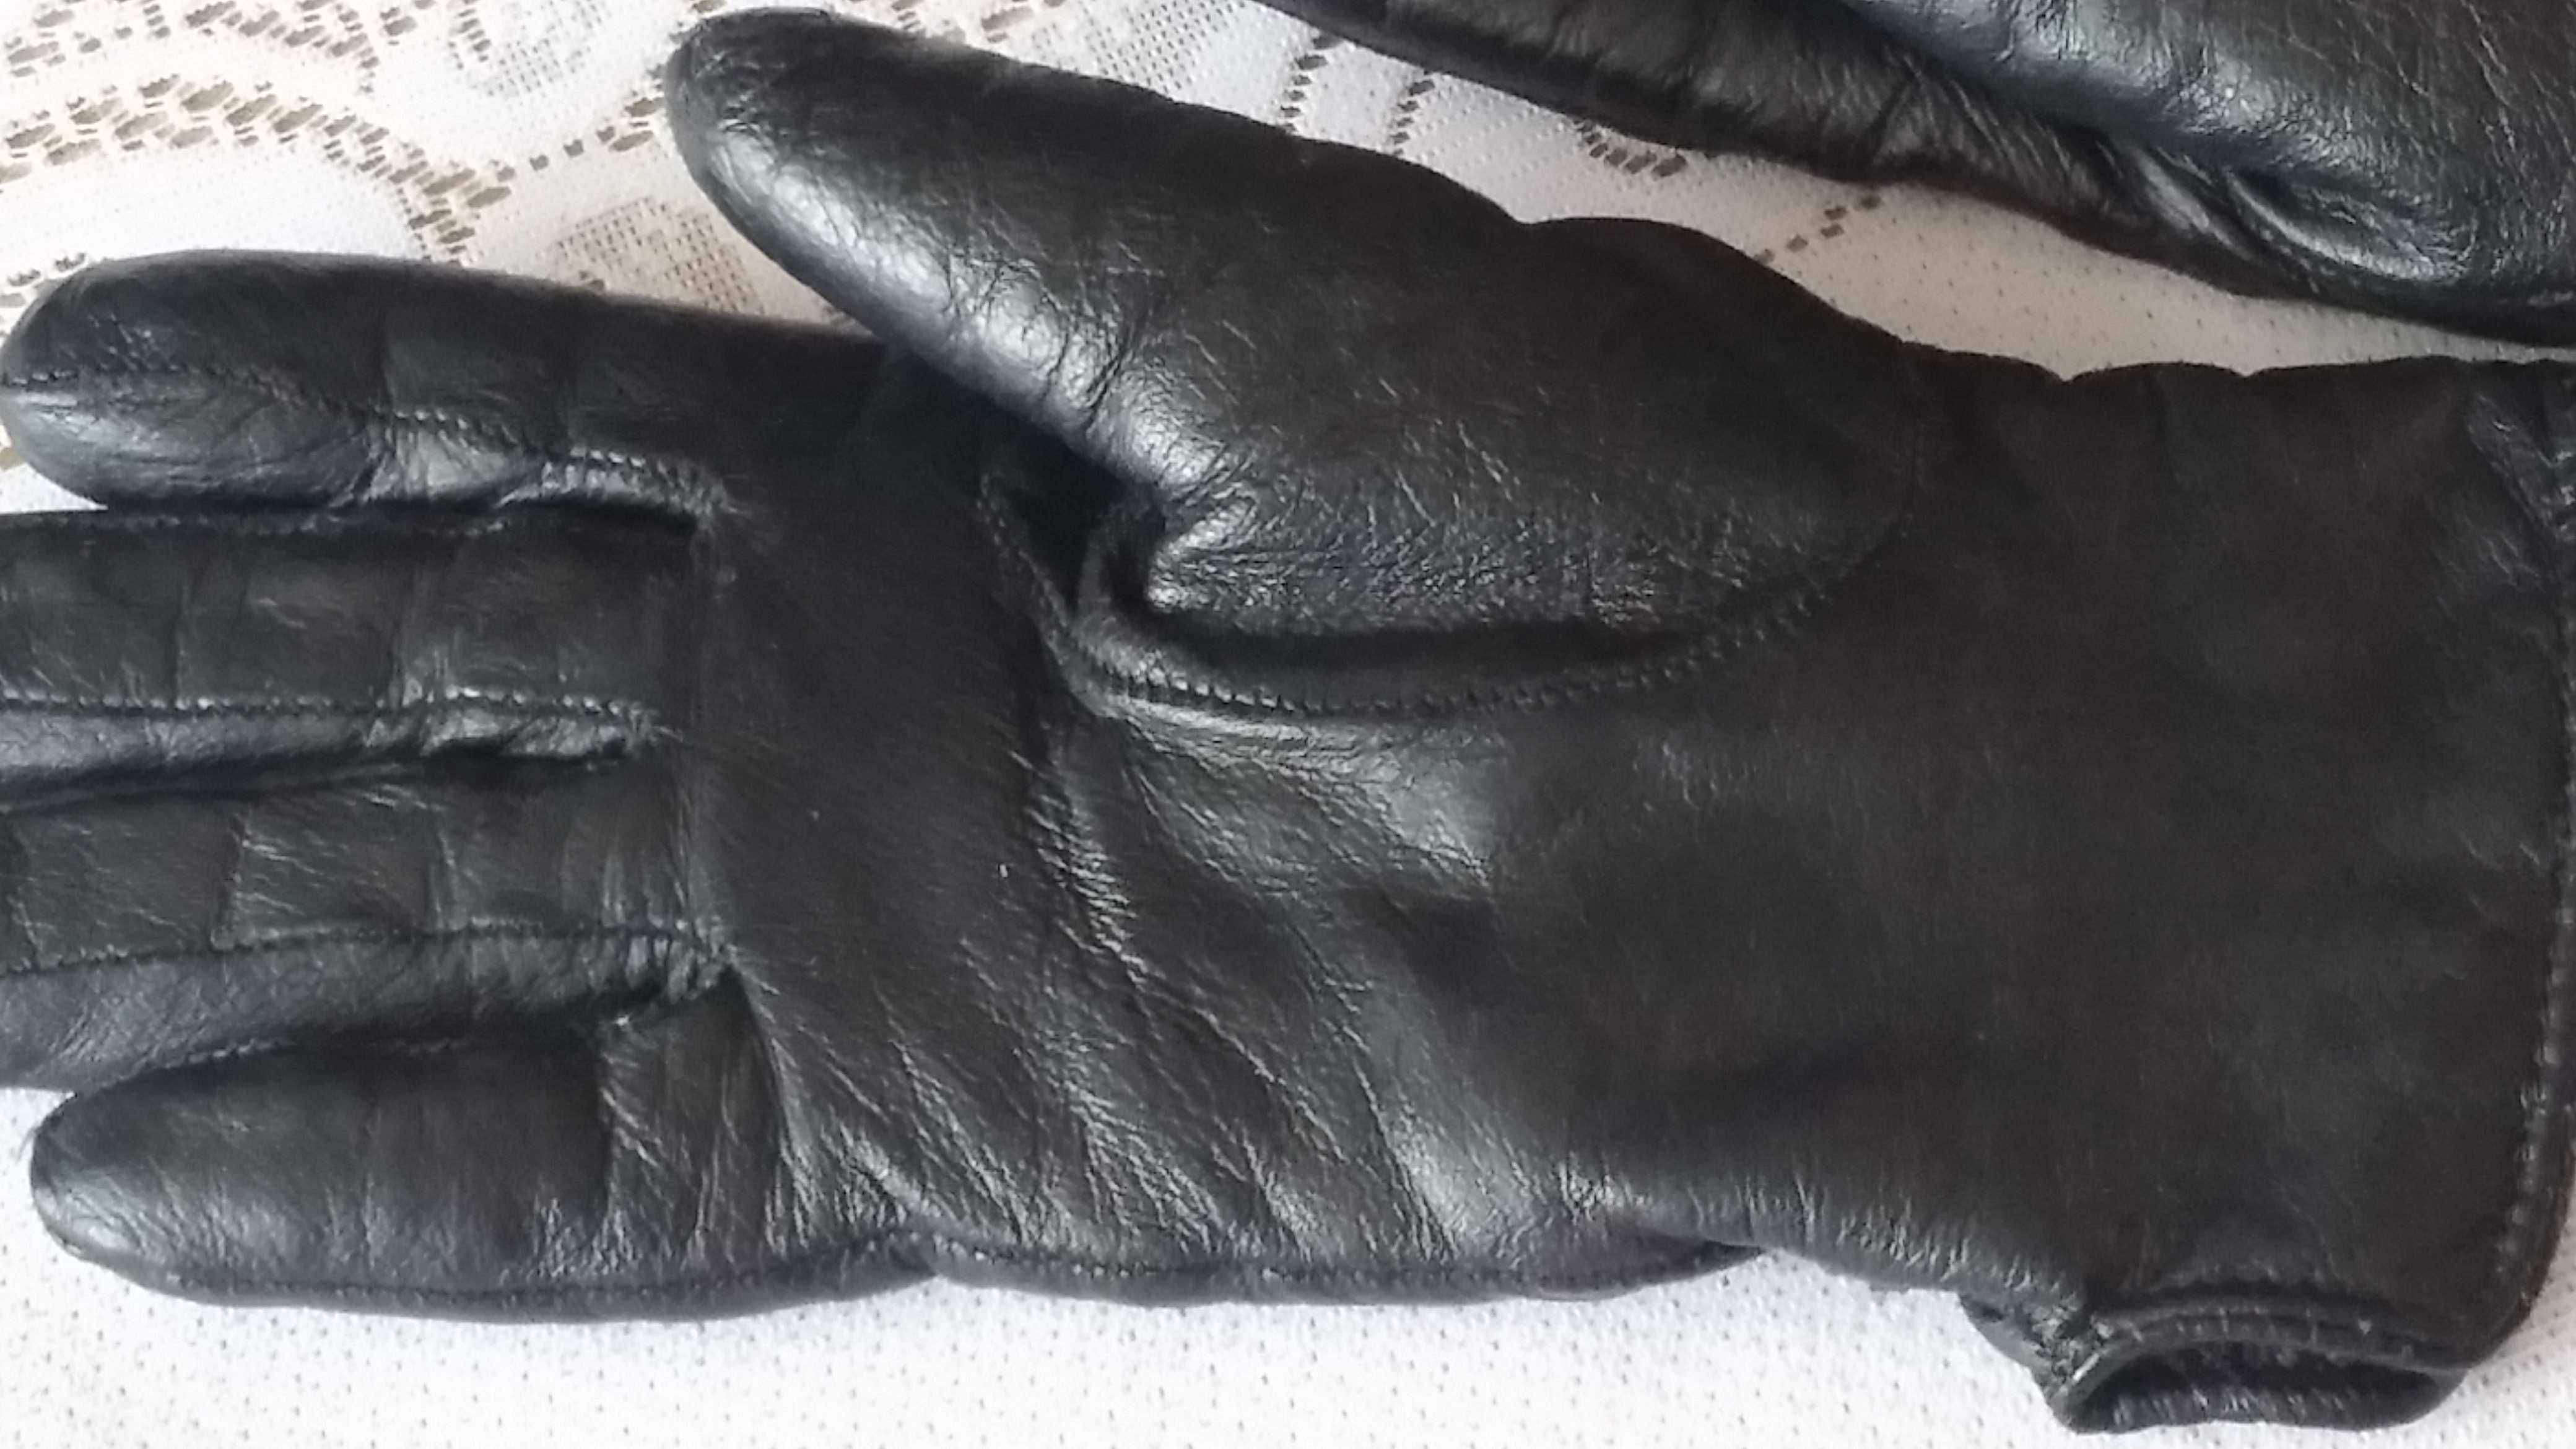 Skórzane rękawiczki z ociepleniem - rozmiar 7 !!!